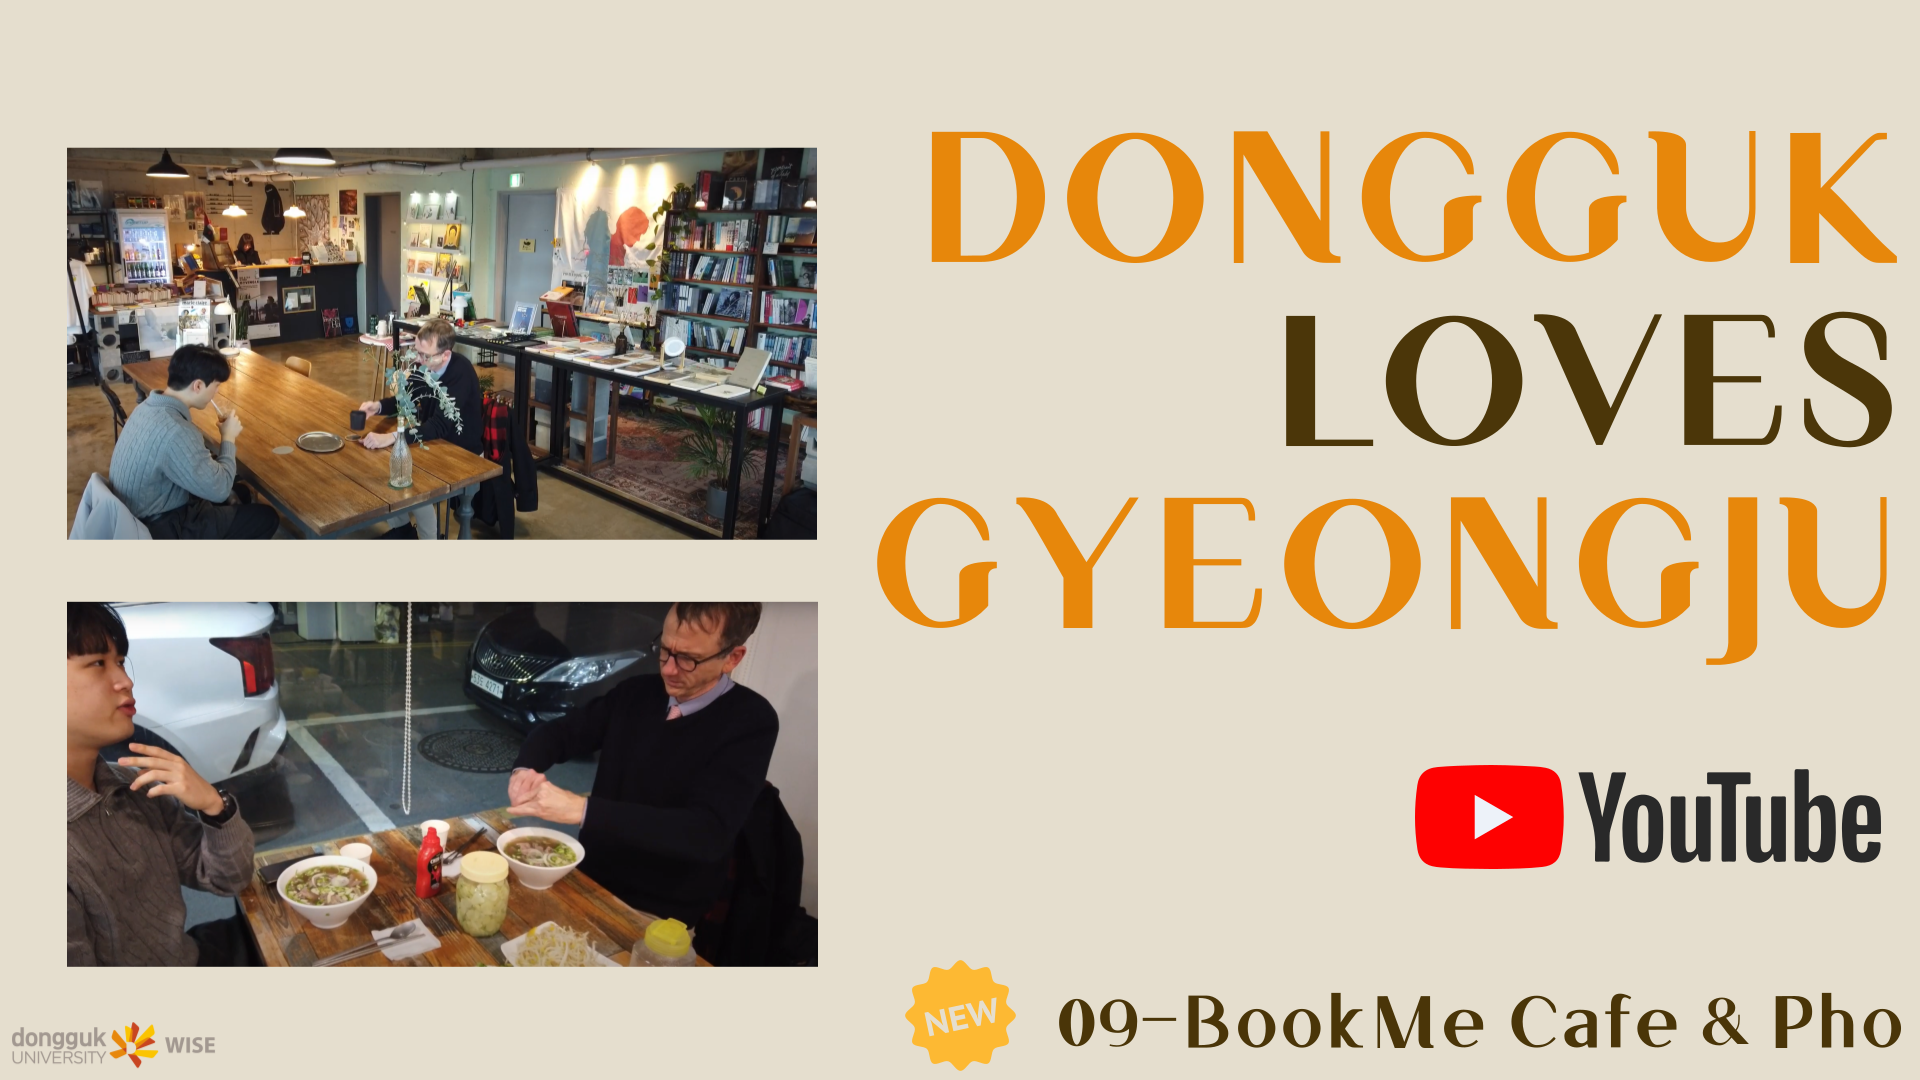 09-BookMe Cafe & Pho - Dongguk Loves Gyeongju